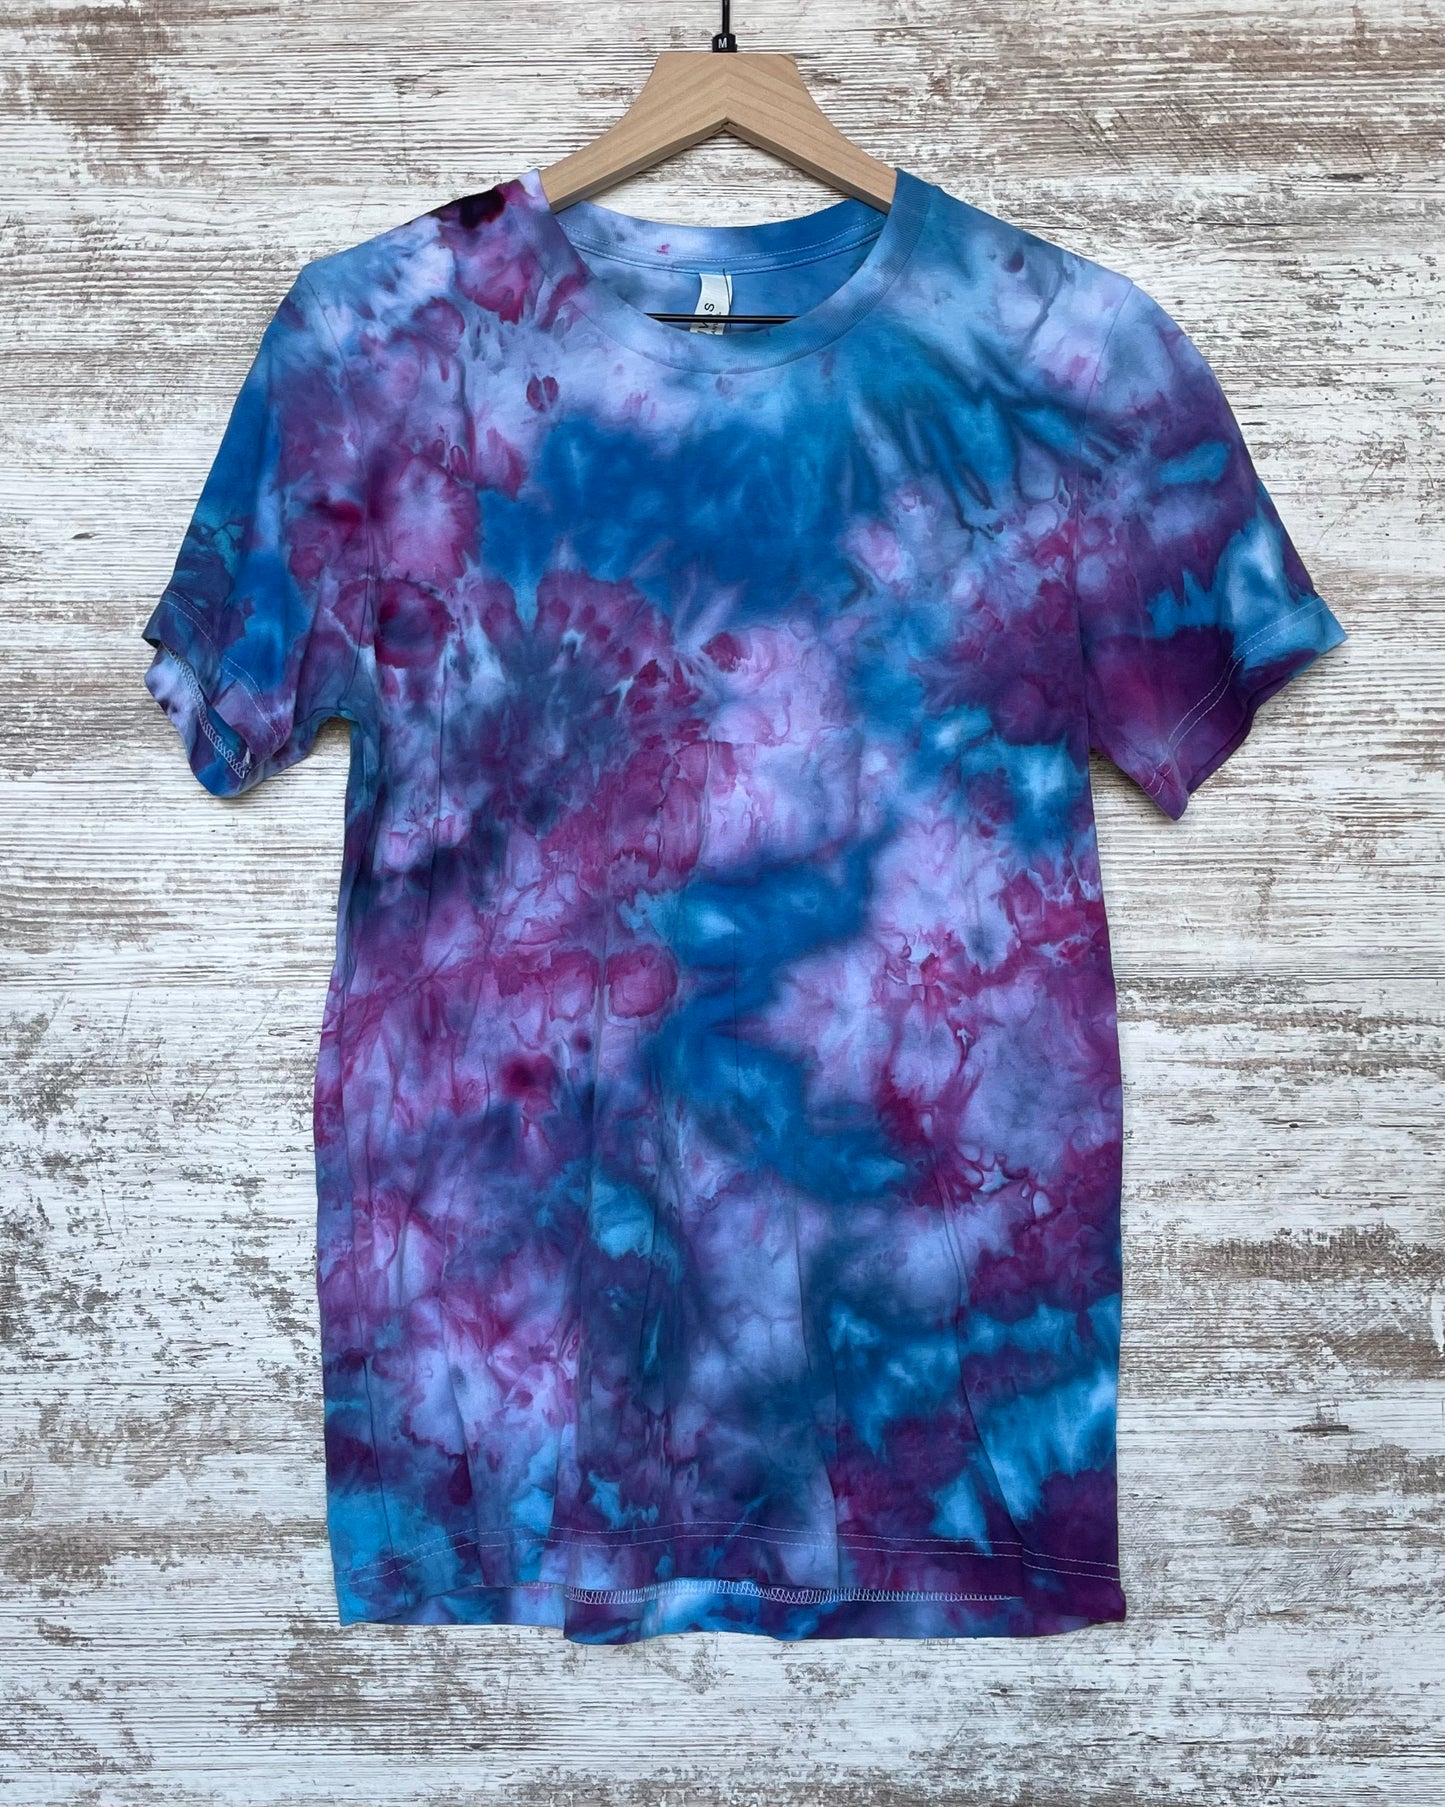 Jellyfish Blue Ice-Dyed Adult Unisex T-shirt